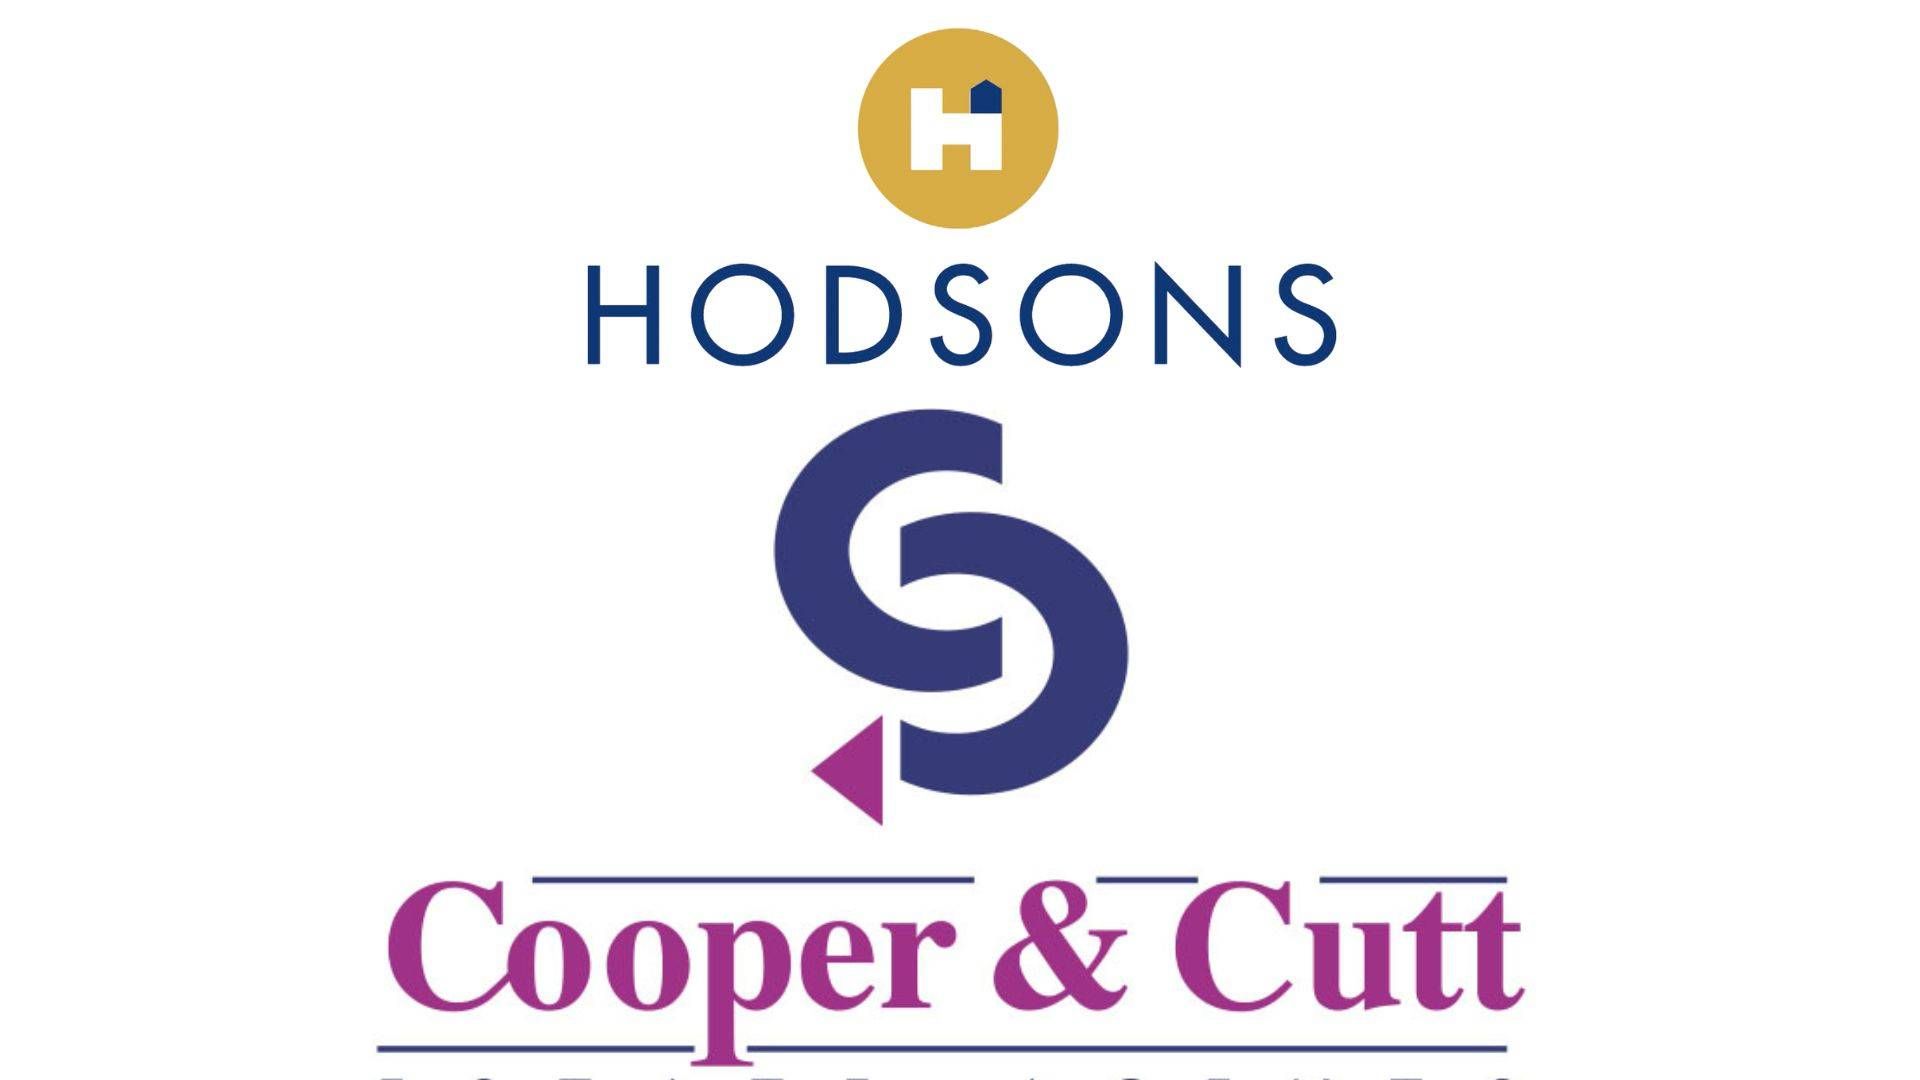 Hodsons Acquire Cooper & Cutt